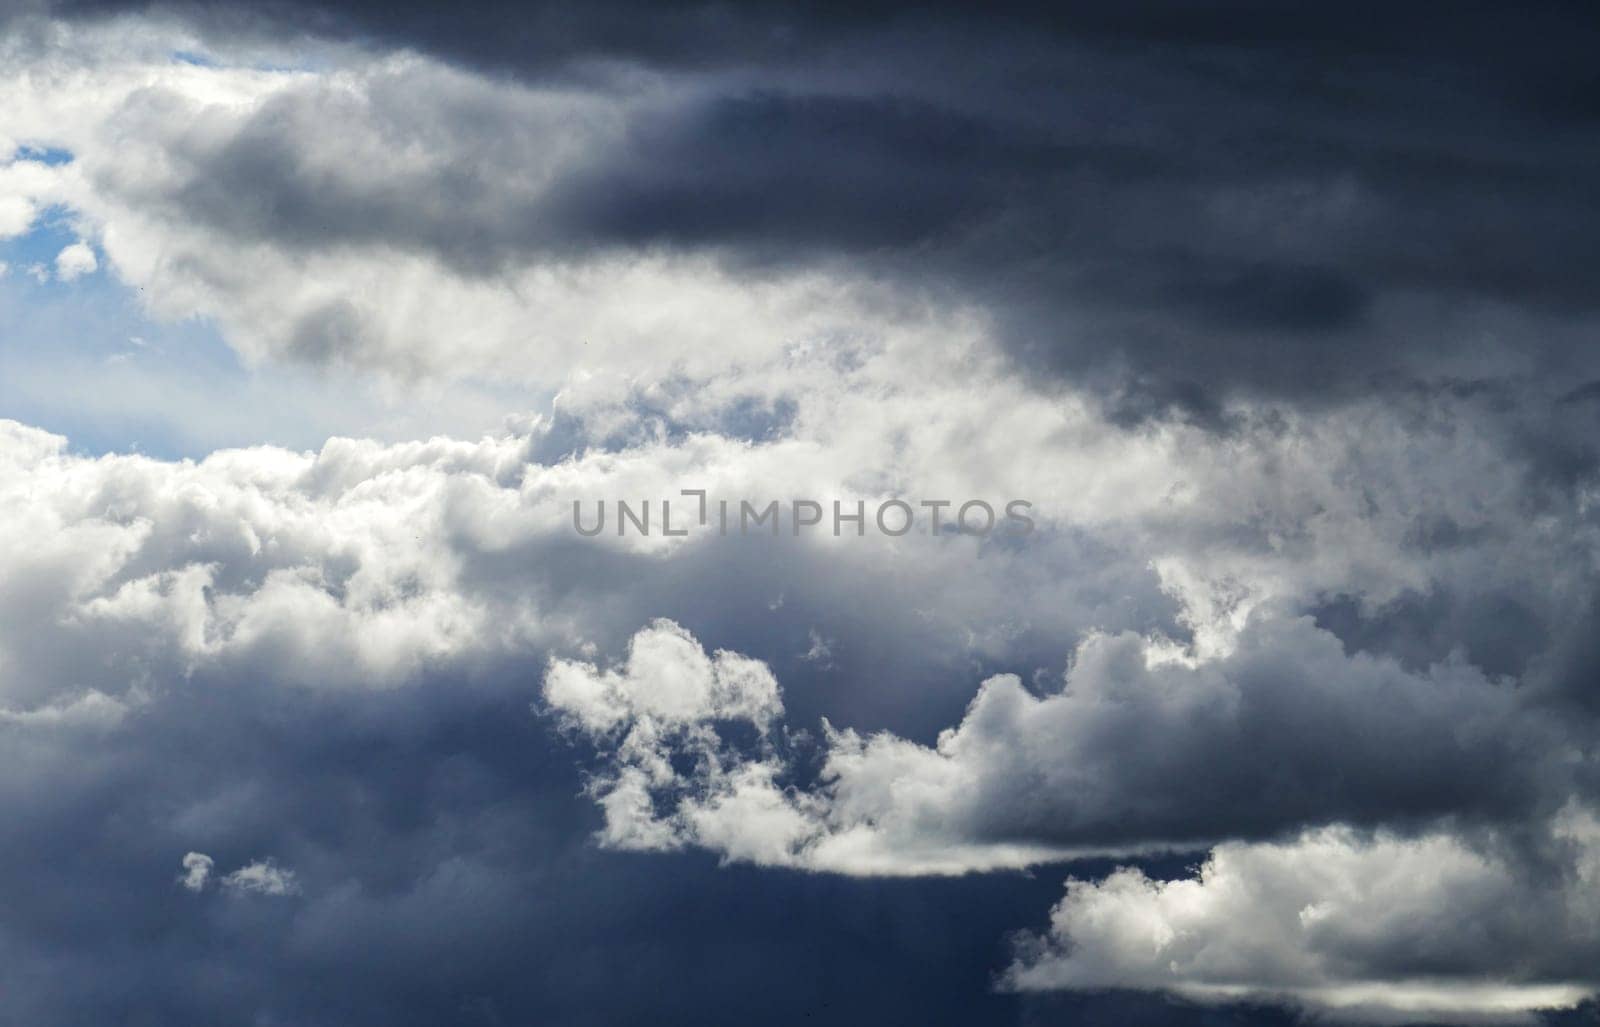 close-up dark clouds,storm clouds moving,stormy rain clouds, by nhatipoglu